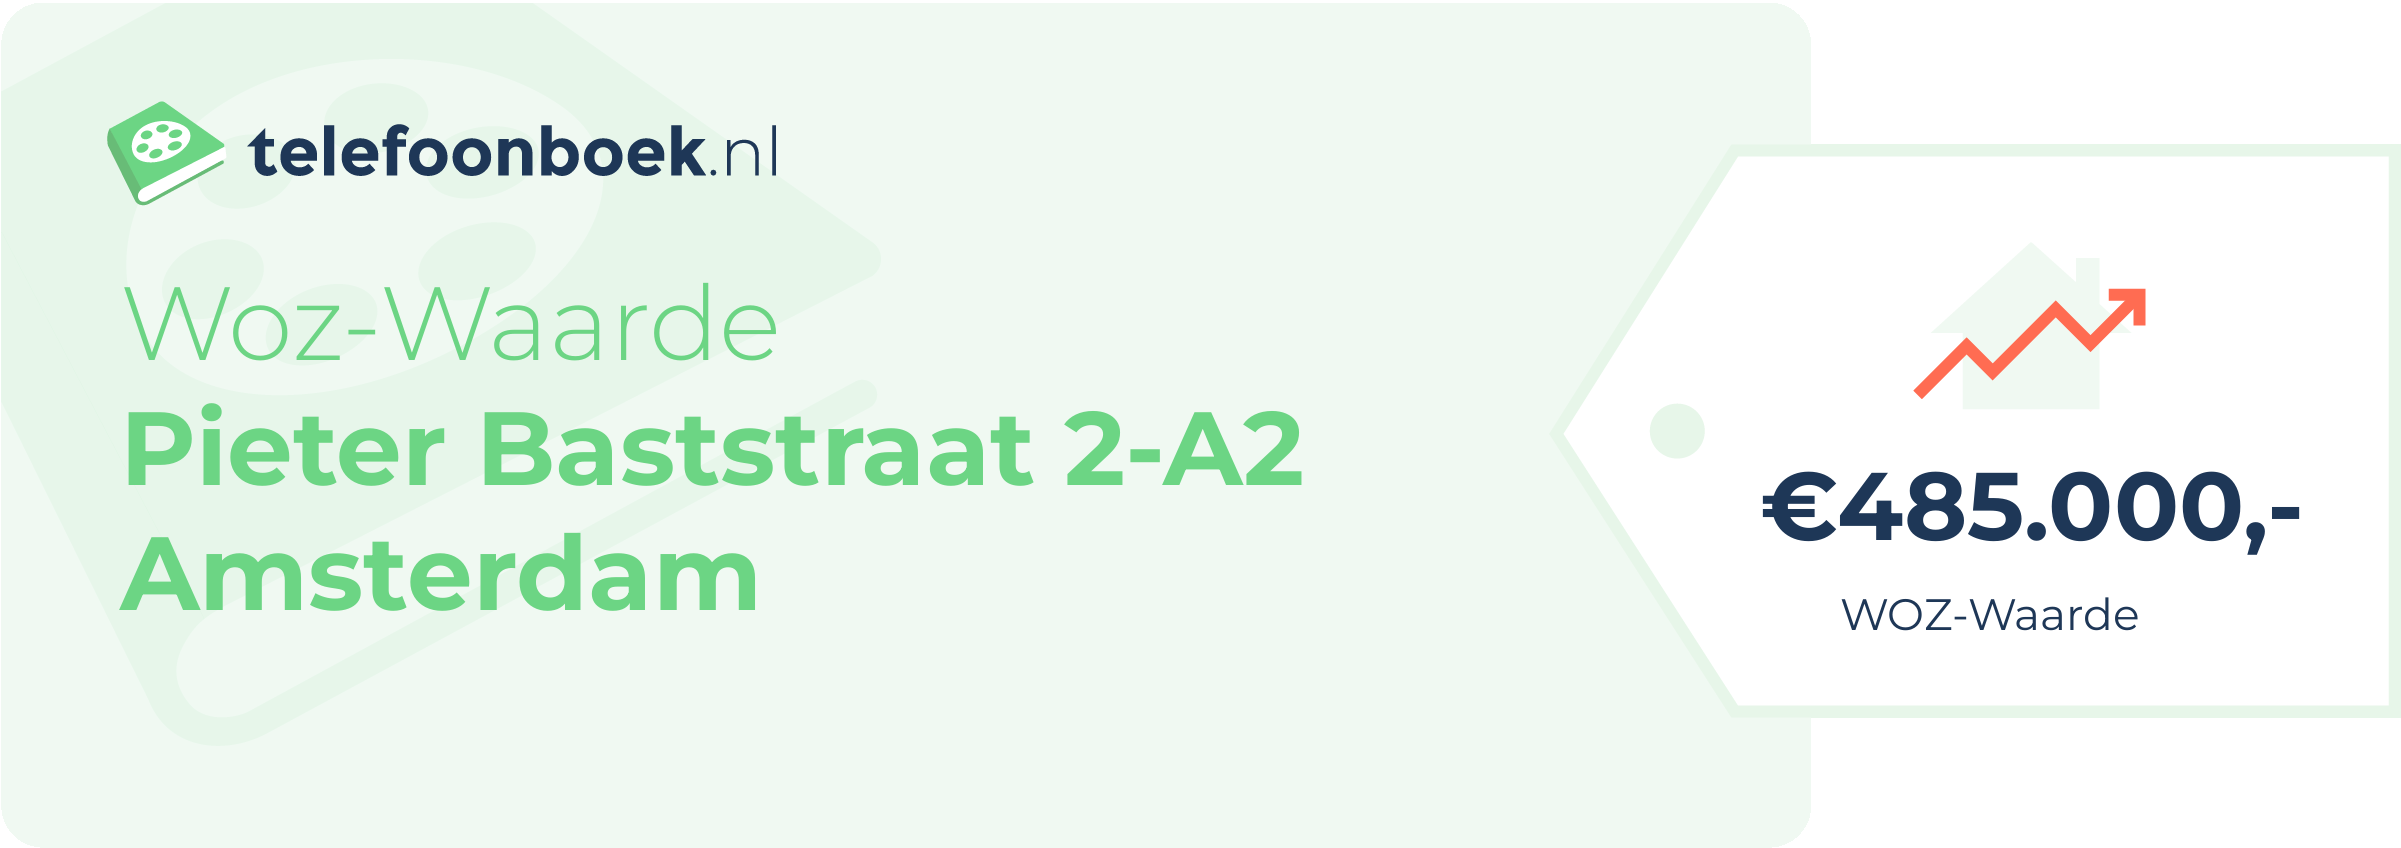 WOZ-waarde Pieter Baststraat 2-A2 Amsterdam